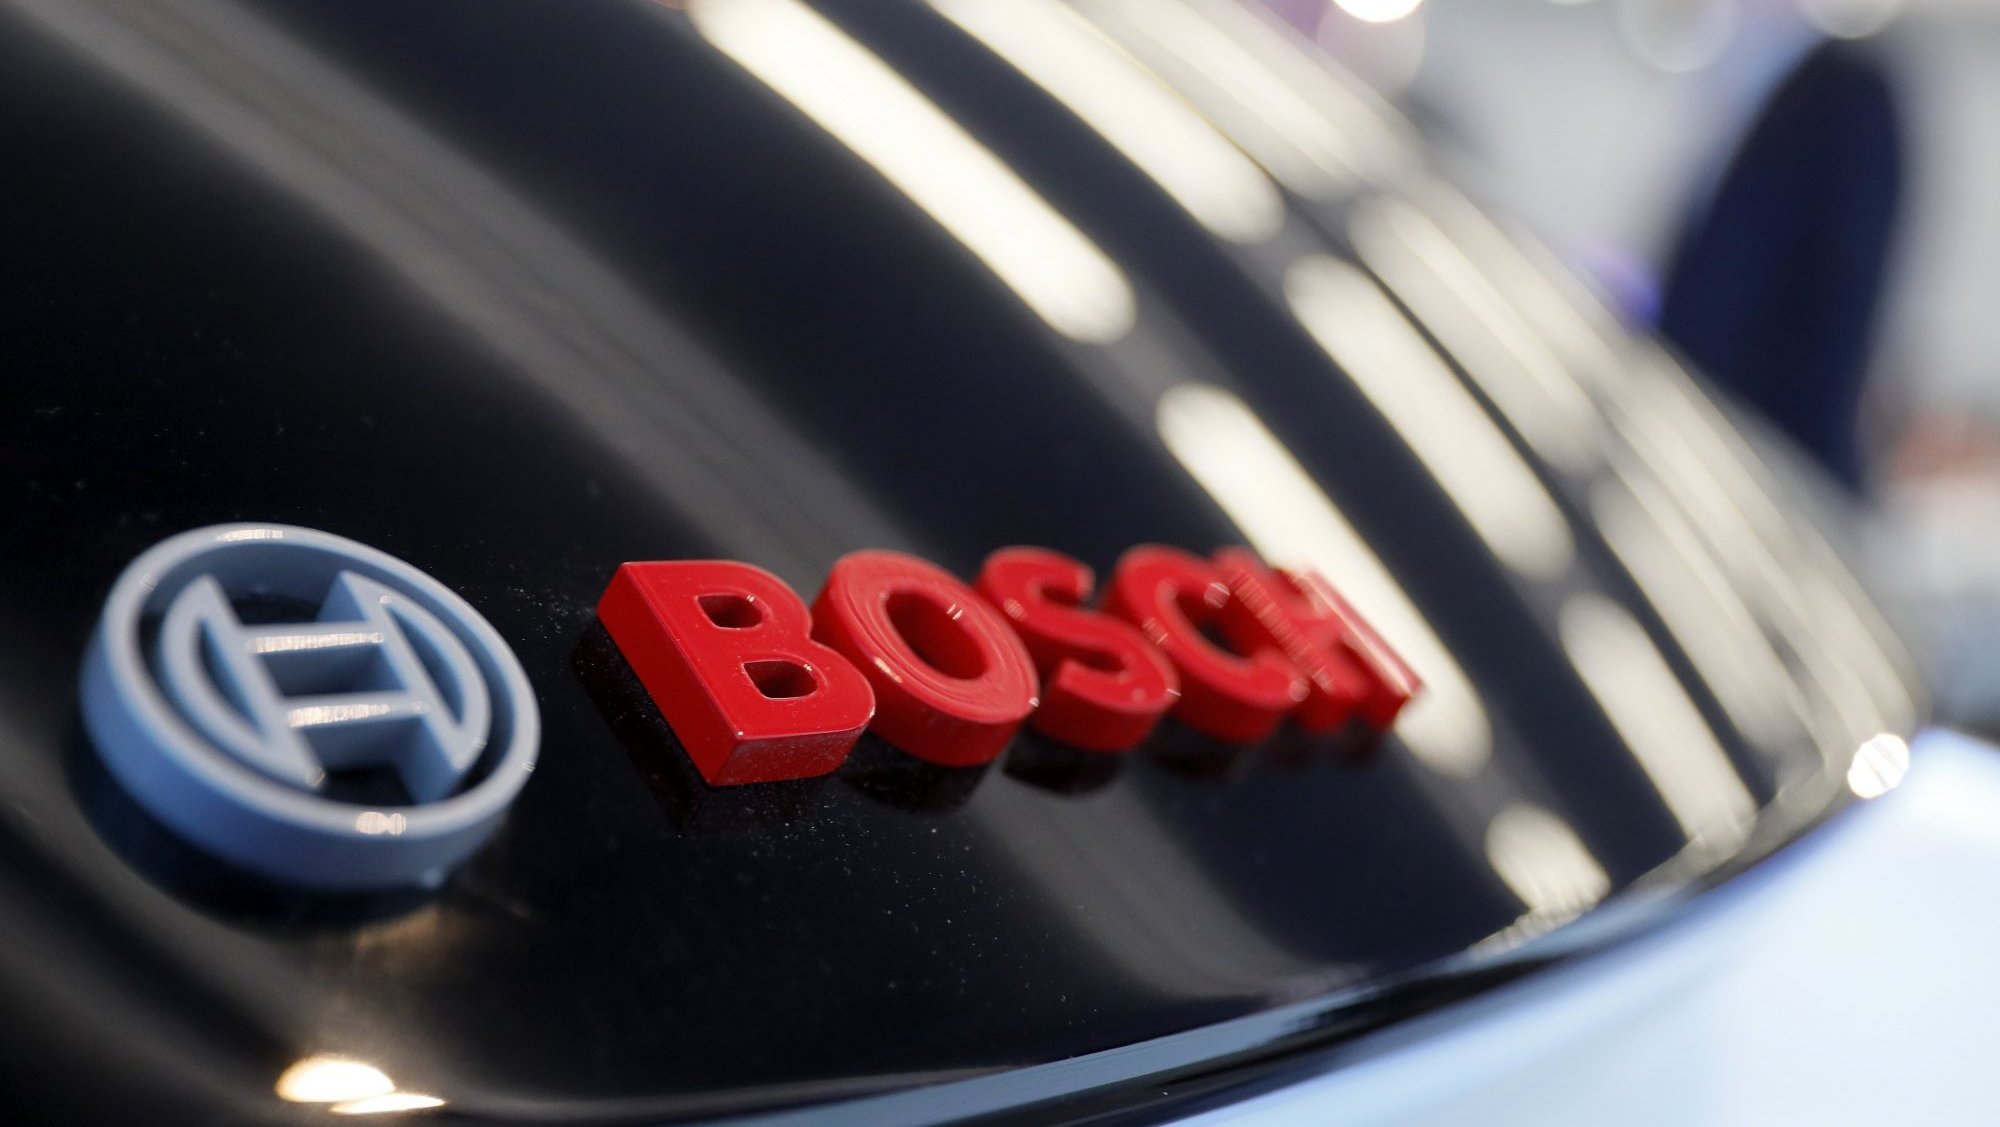 A Bosch conta com 3 carros descaracterizados, em Braga, onde faz testes. A cidade é uma das &quot;chamadas zonas tecnológicas portuguesas&quot;